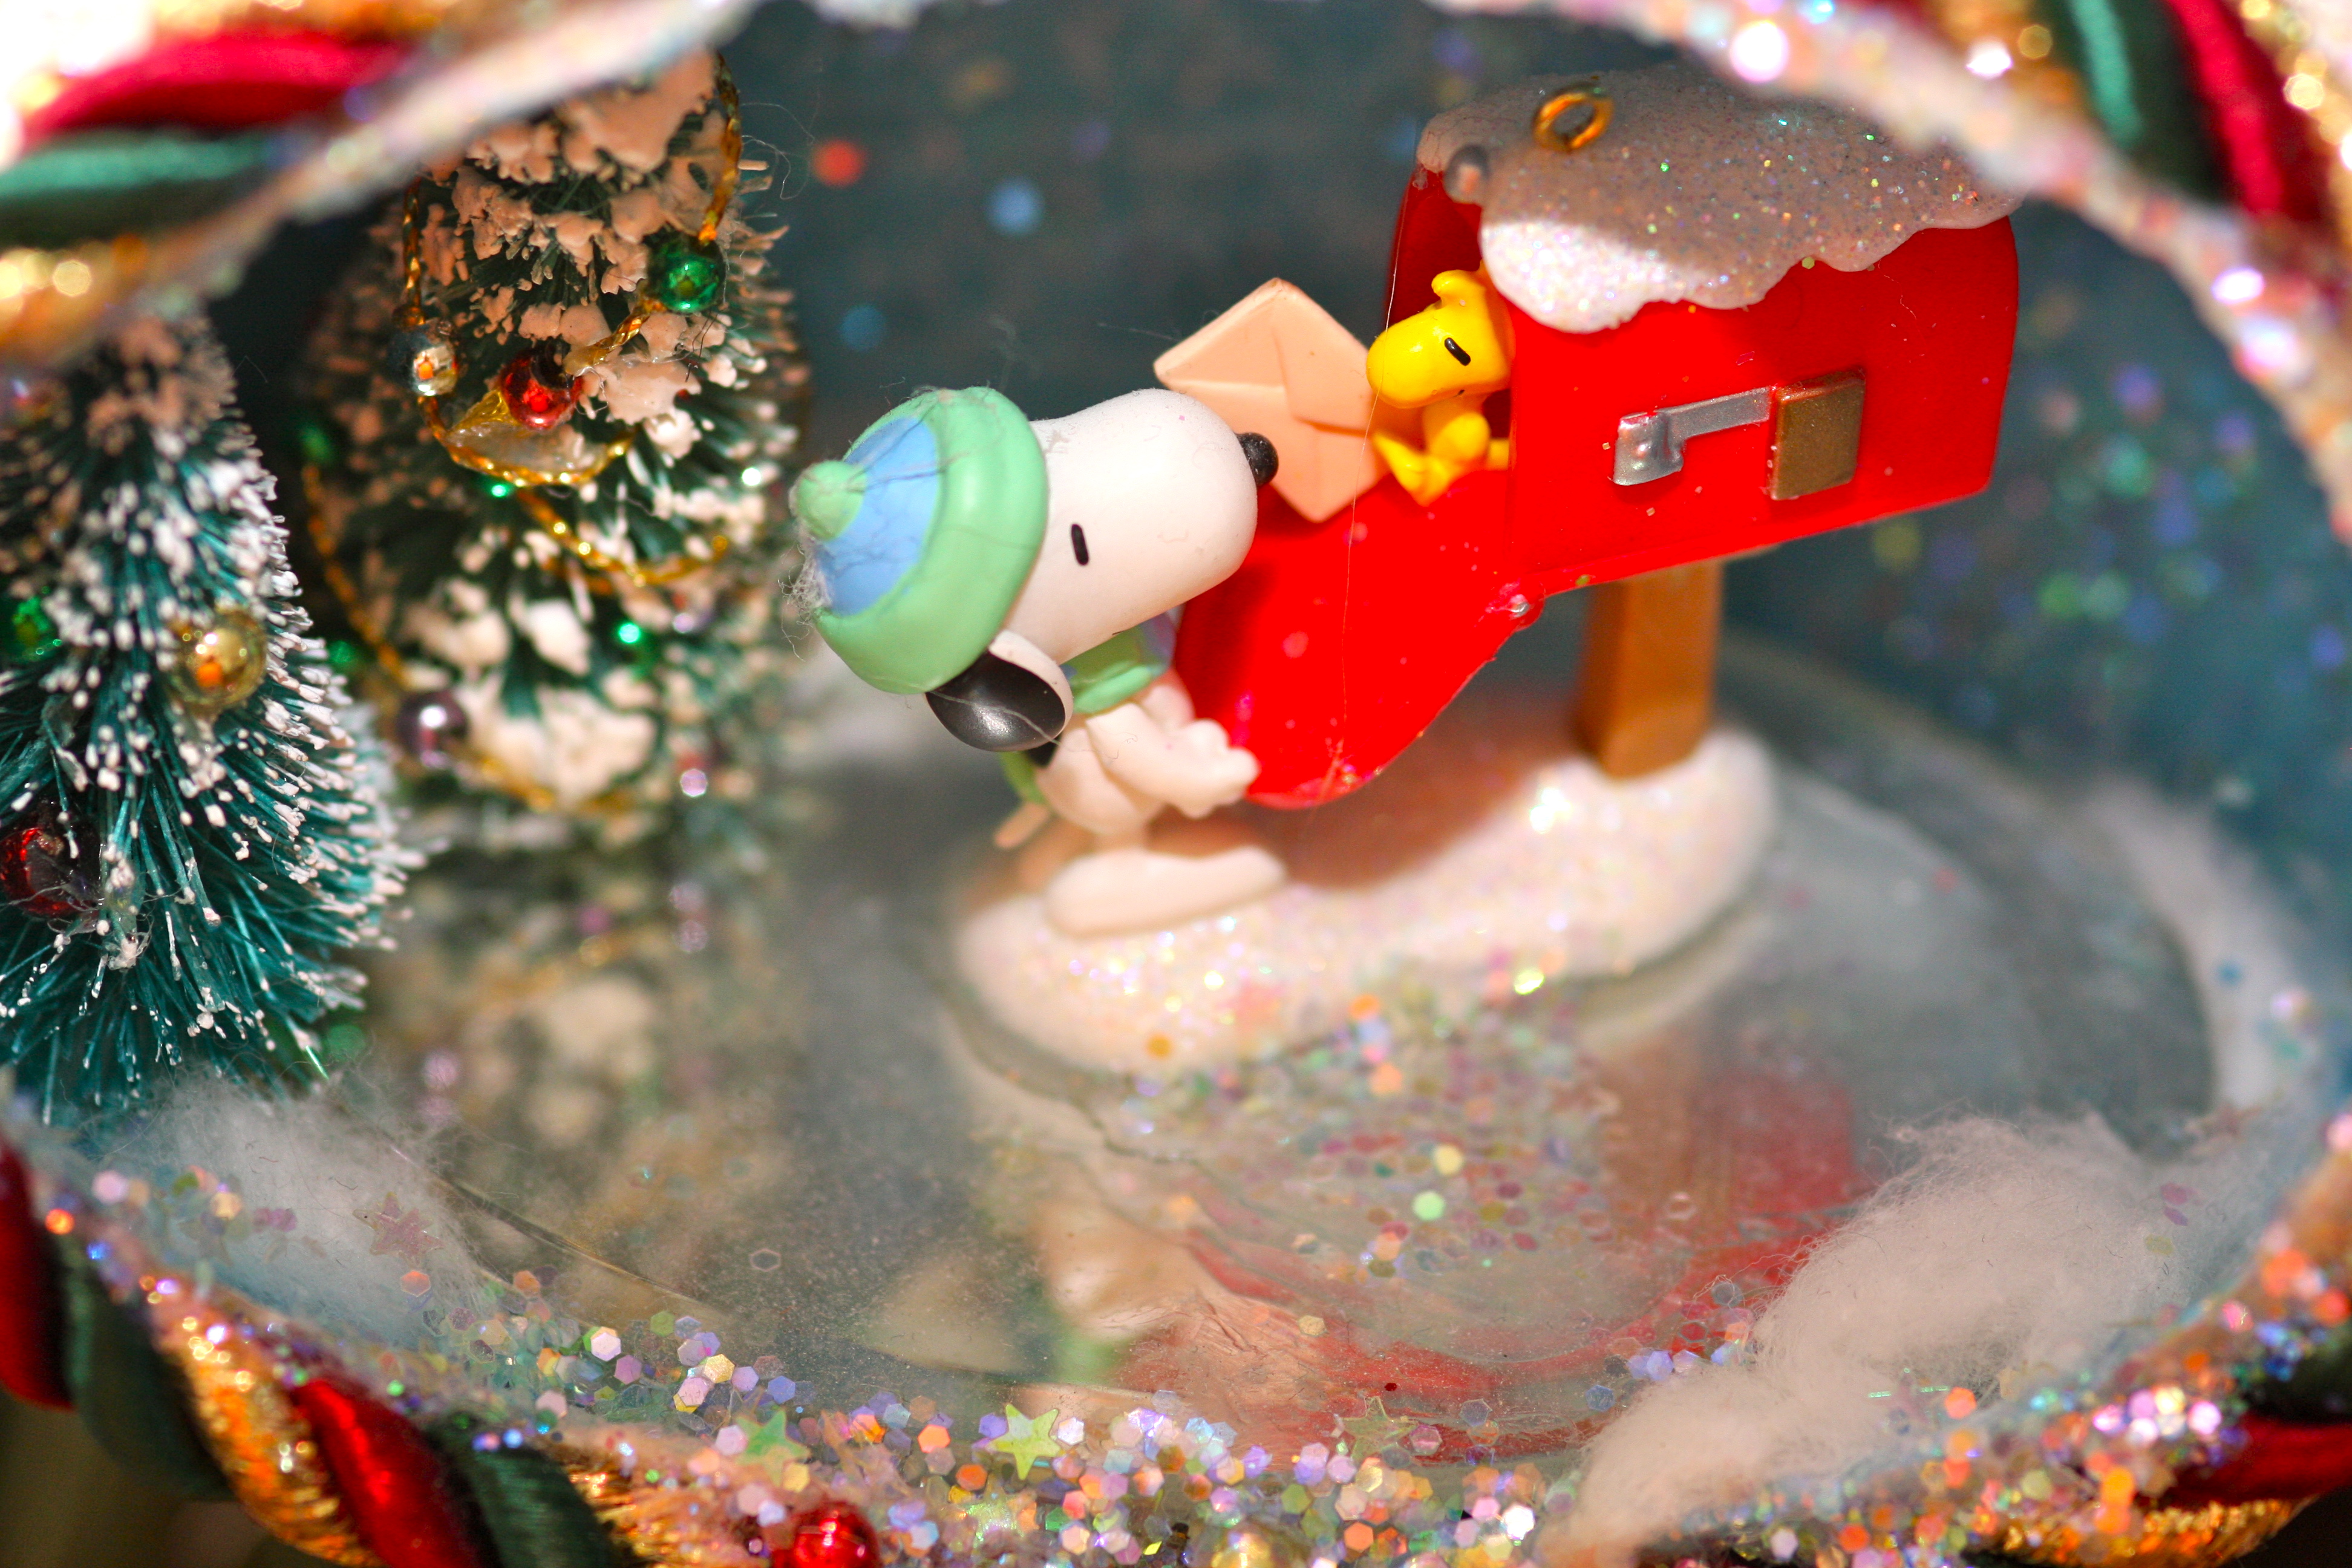 Foto: Winterlich-weihnachtliches Ornament mit Snoopy und Woodstock